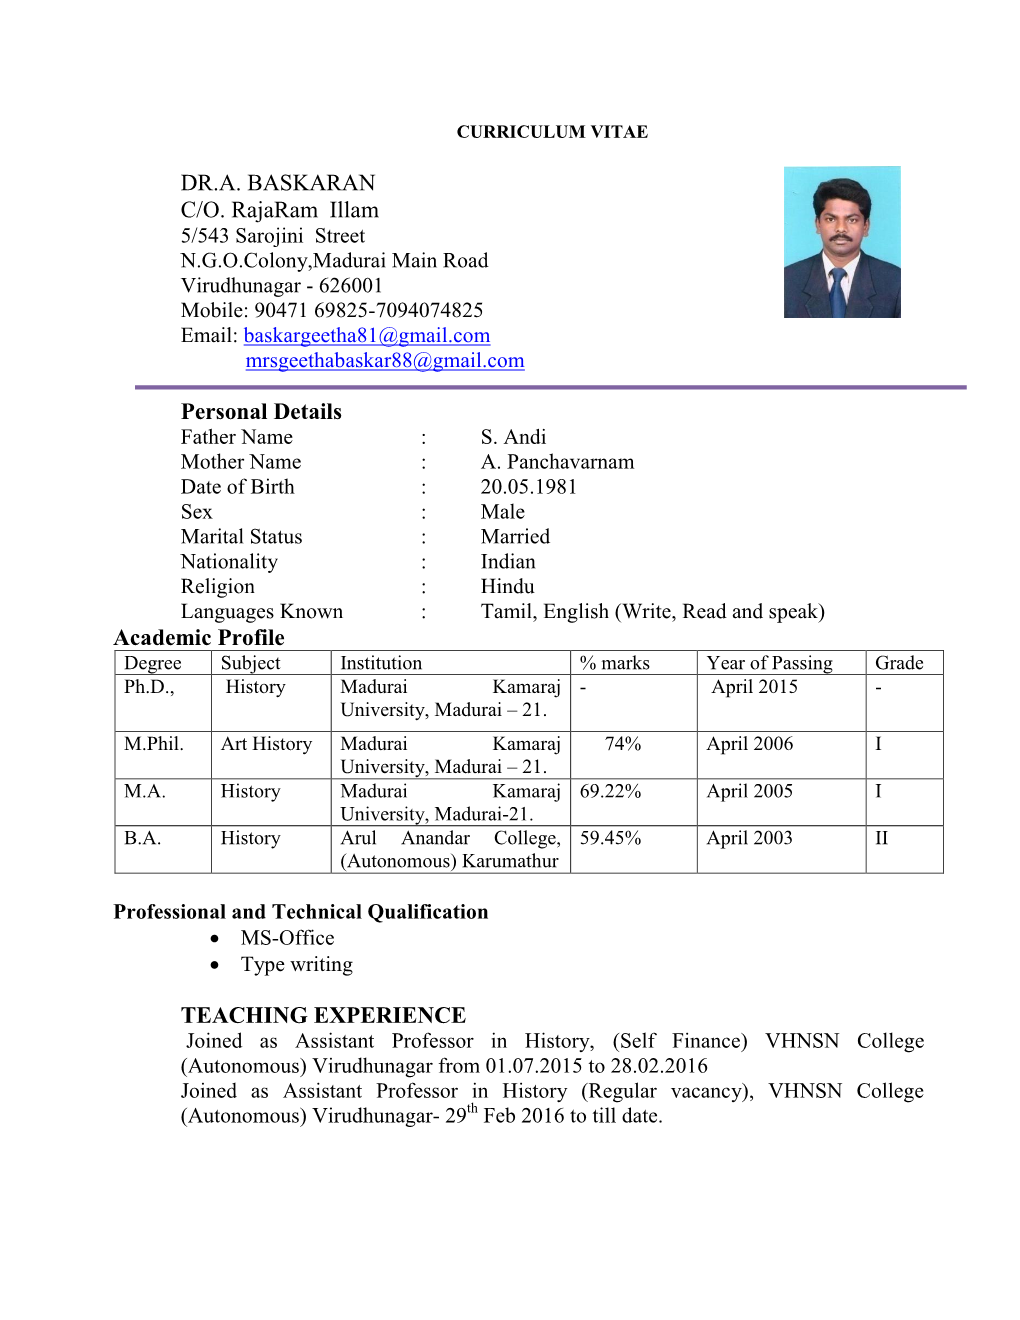 DR.A. BASKARAN C/O. Rajaram Illam